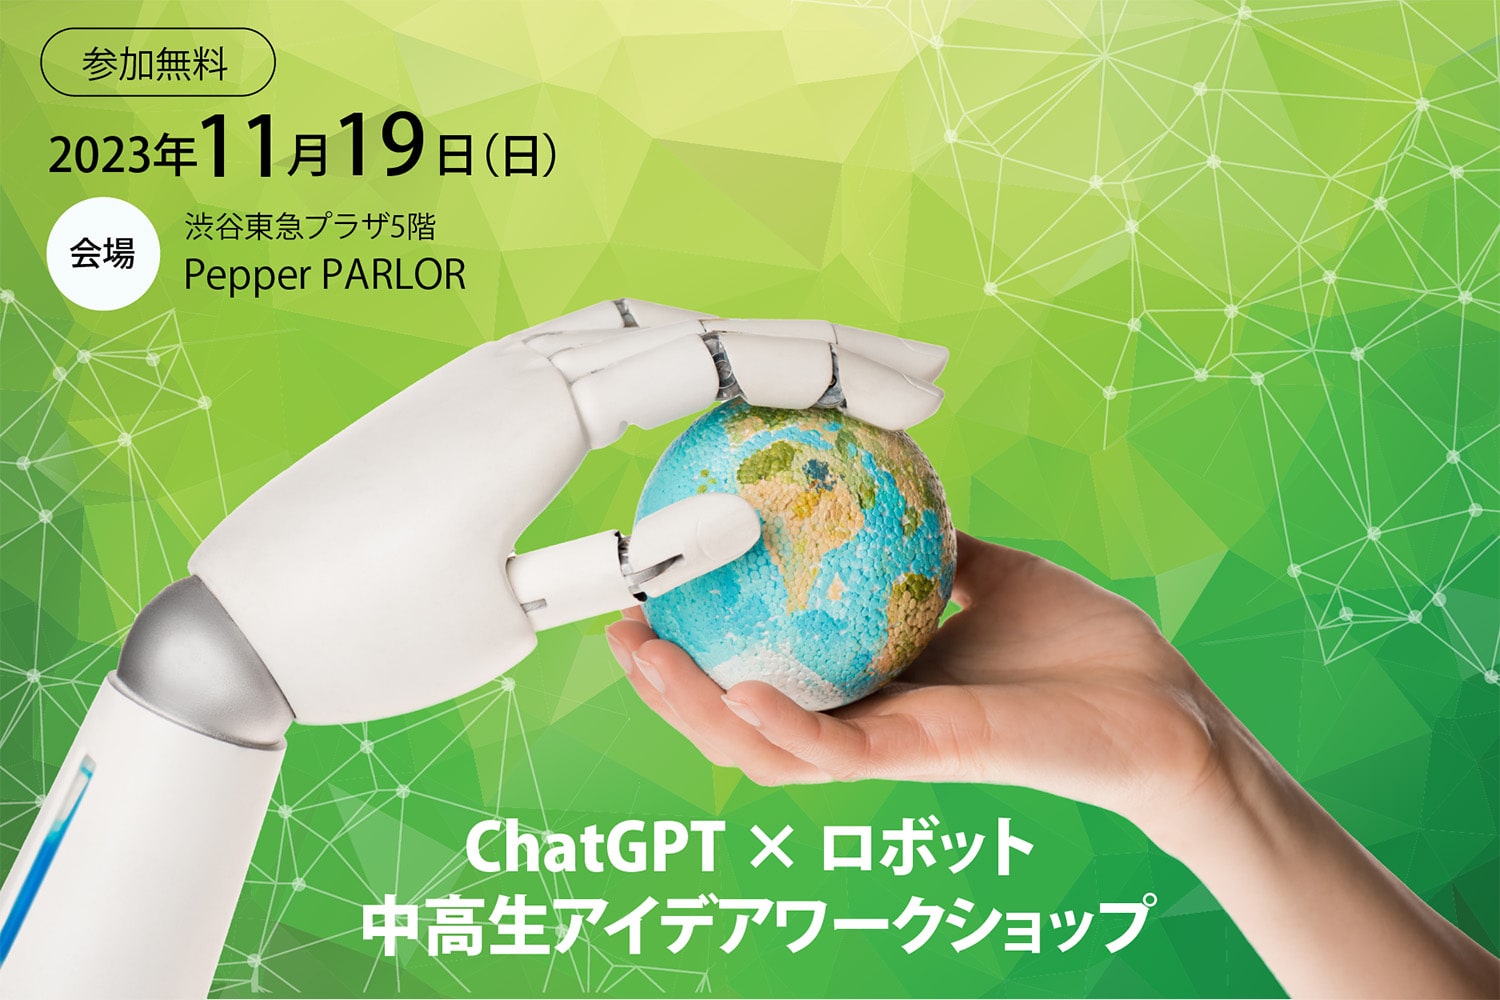 中学生・高校生向けワークショップ「ChatGPT x ロボット 中高生アイデアワークショップ」参加者募集中！